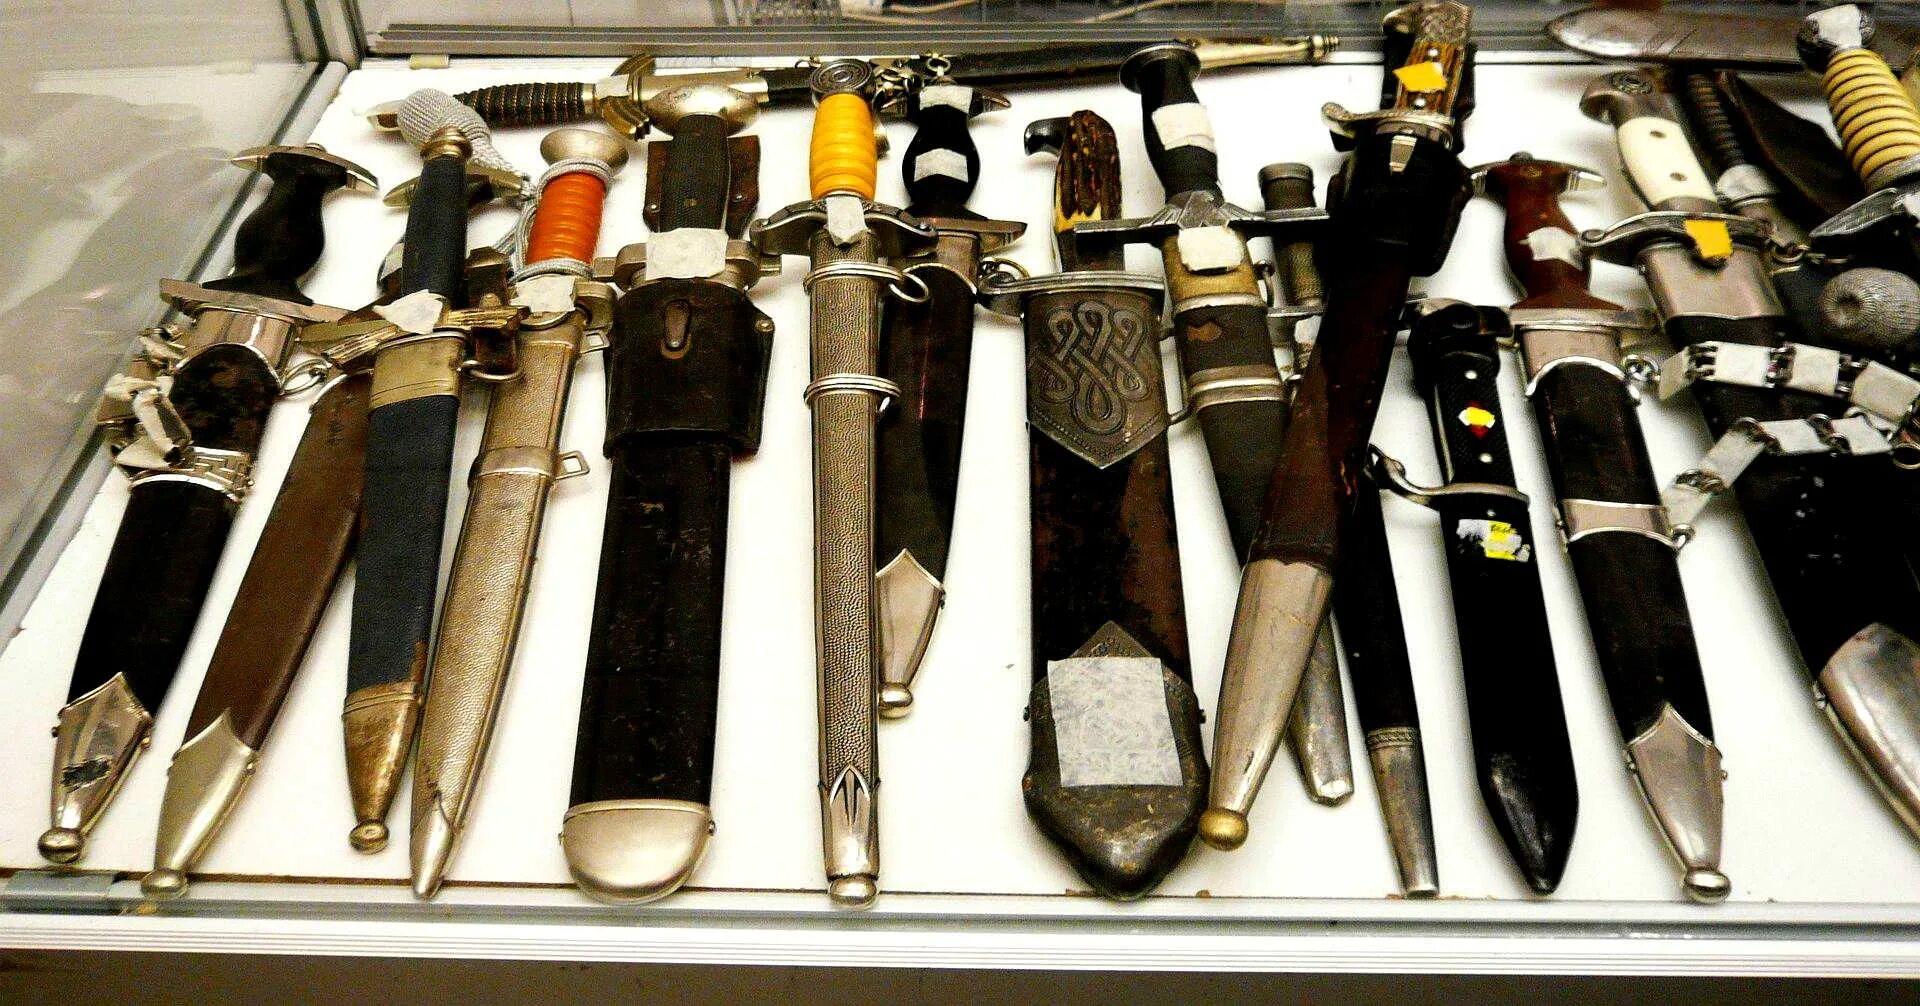 Продажа холодного оружия. Пашихин Холодное оружие магазин. Коллекционирование холодного оружия. Коллекция антикварного холодного оружия. Коллекционные ножи.